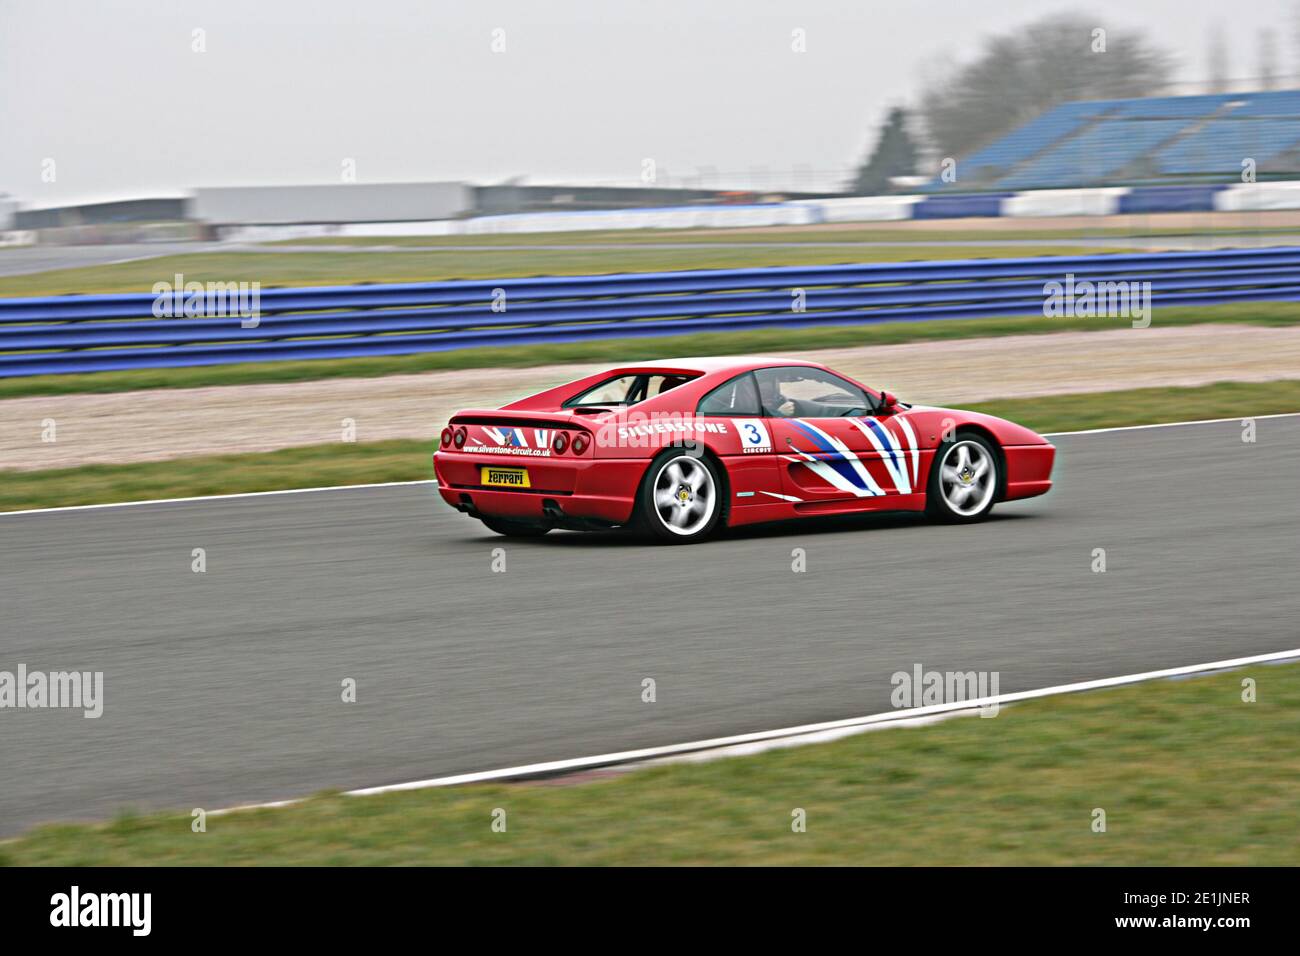 Journée expérience Ferrari à Silverstone Banque D'Images